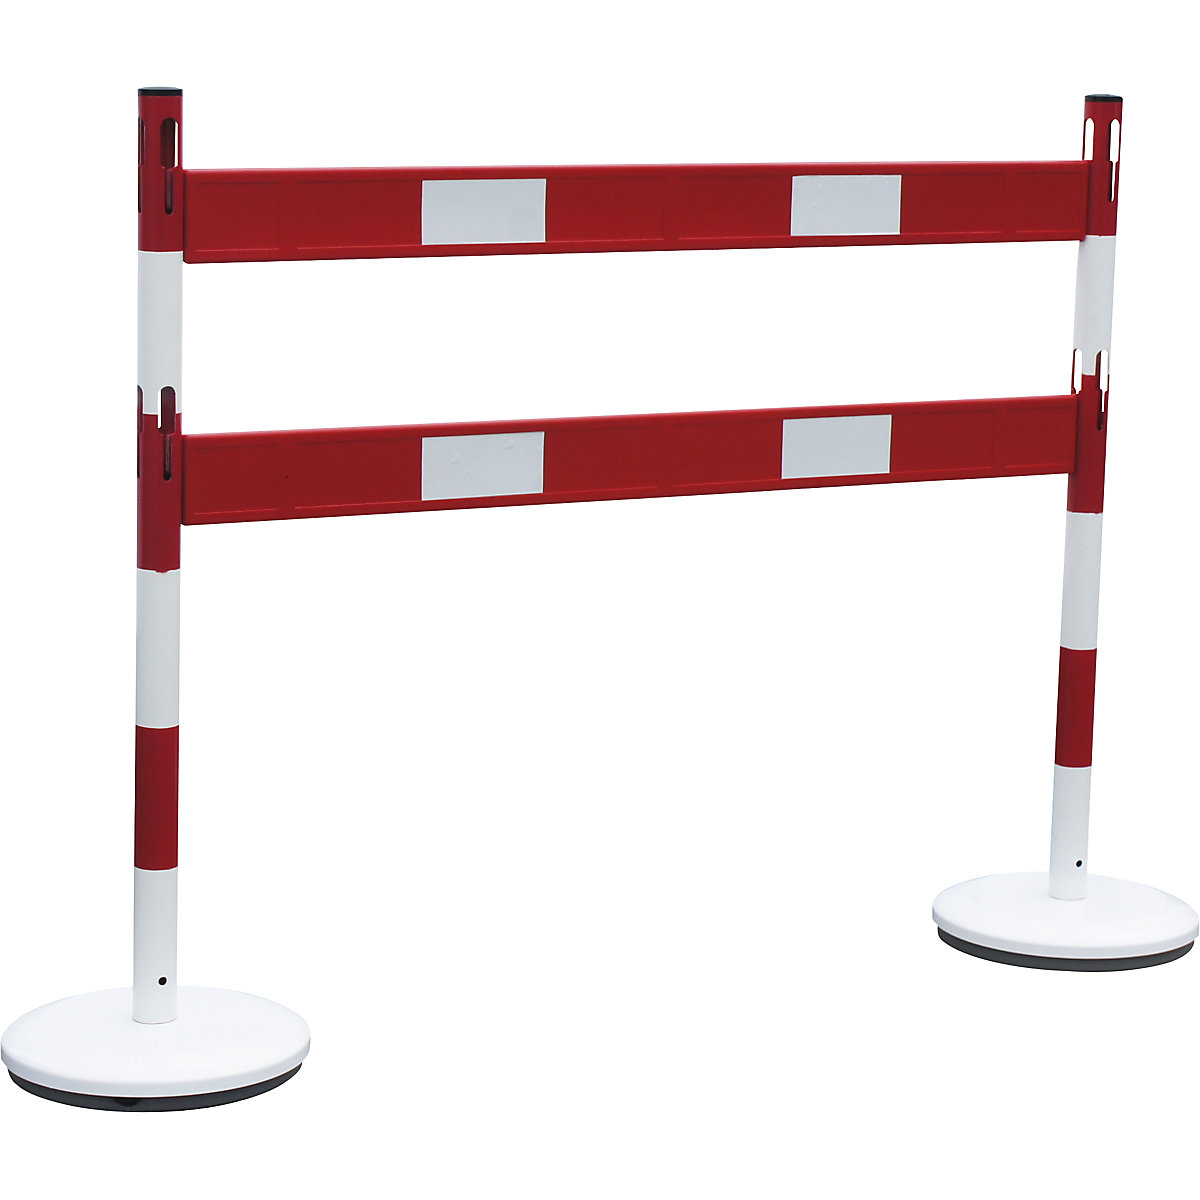 Juego de postes barrera con tablones – VISO